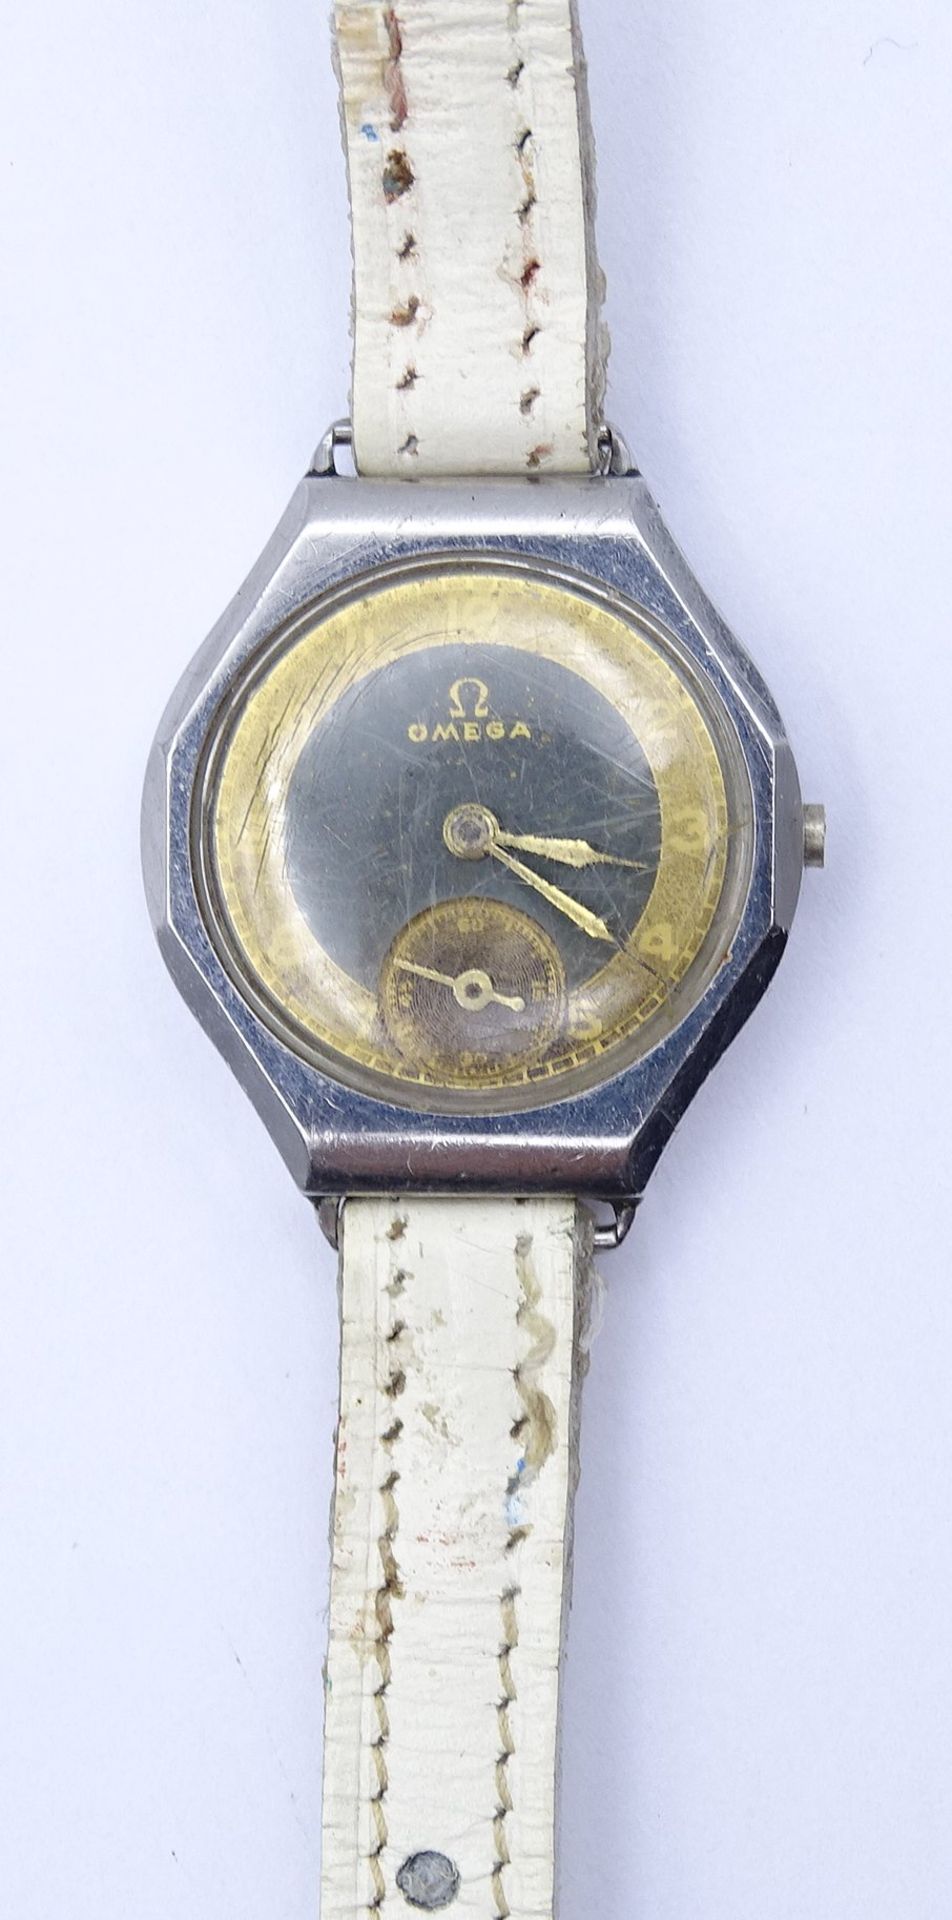 Alte Damen Armbanduhr "Omega", mechanisch, 22x23mm, Funktion nicht geprüft (Krone fehlt)